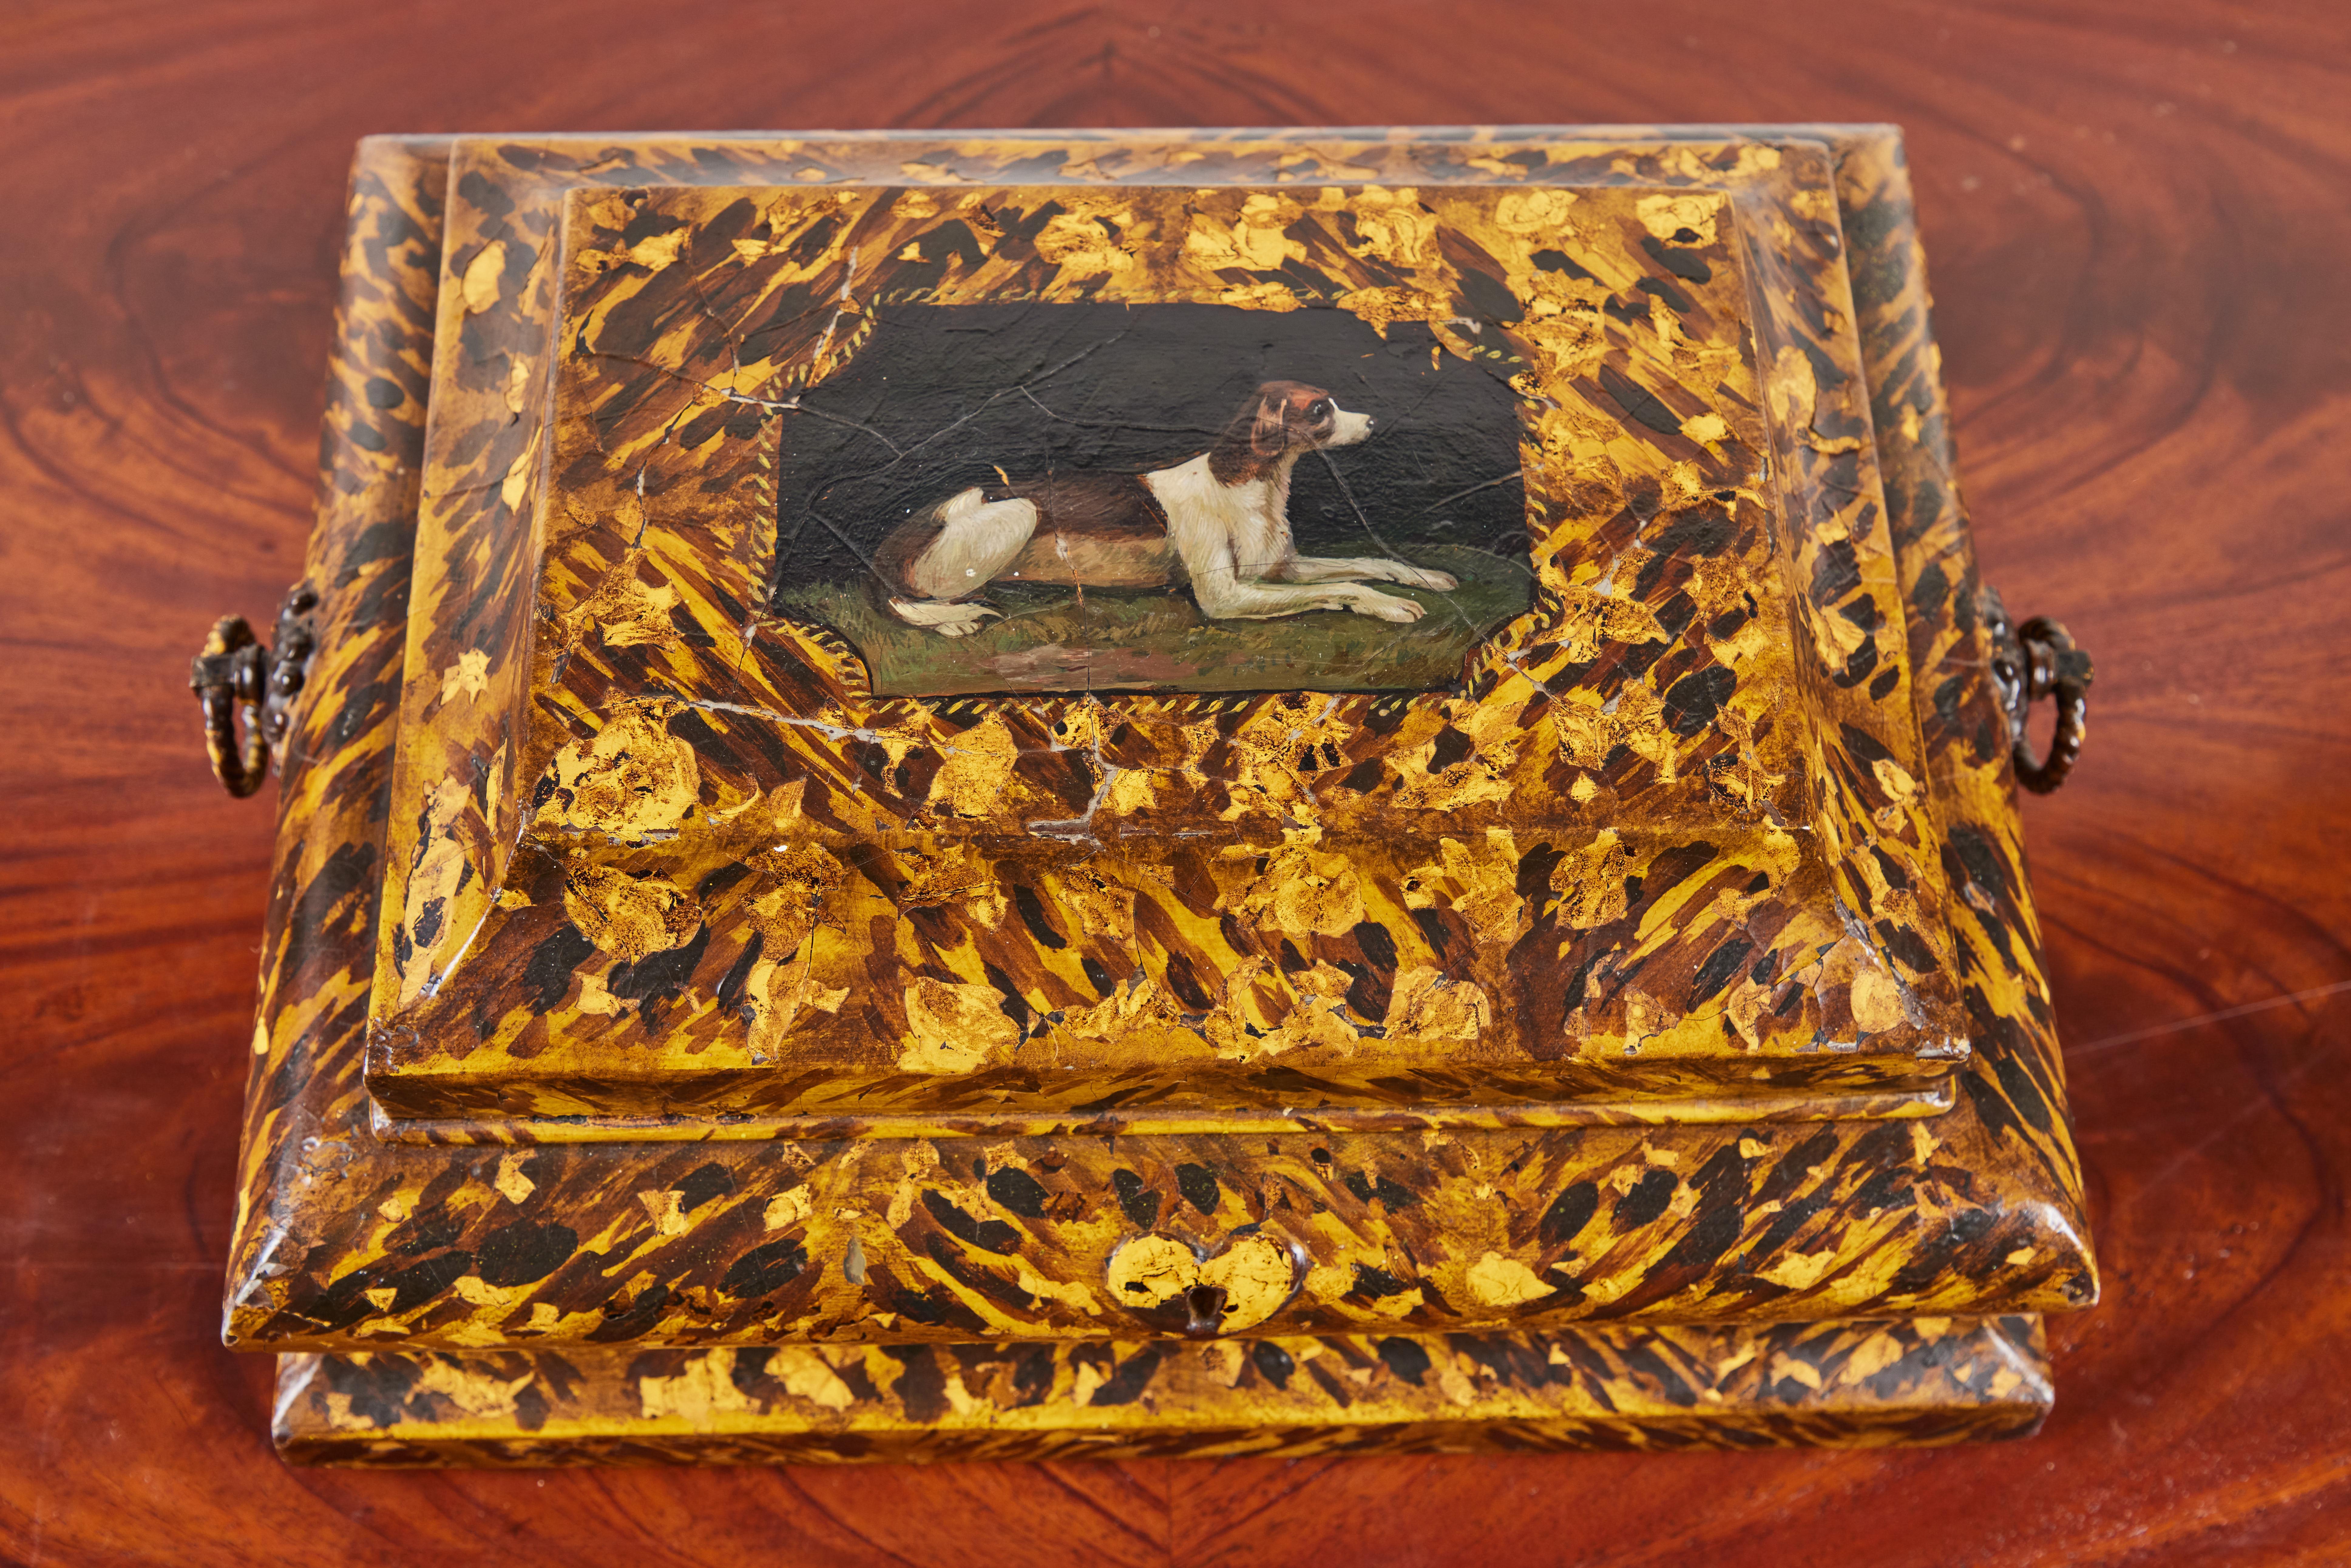 Fabuleuse boîte aux lettres ondulée, datant de 1820, de style anglais, à charnière, peinte à la main en fausse tortue. L'intérieur avec un miroir qui cache un compartiment secret. La partie supérieure est ornée d'un camée avec un chien peint,